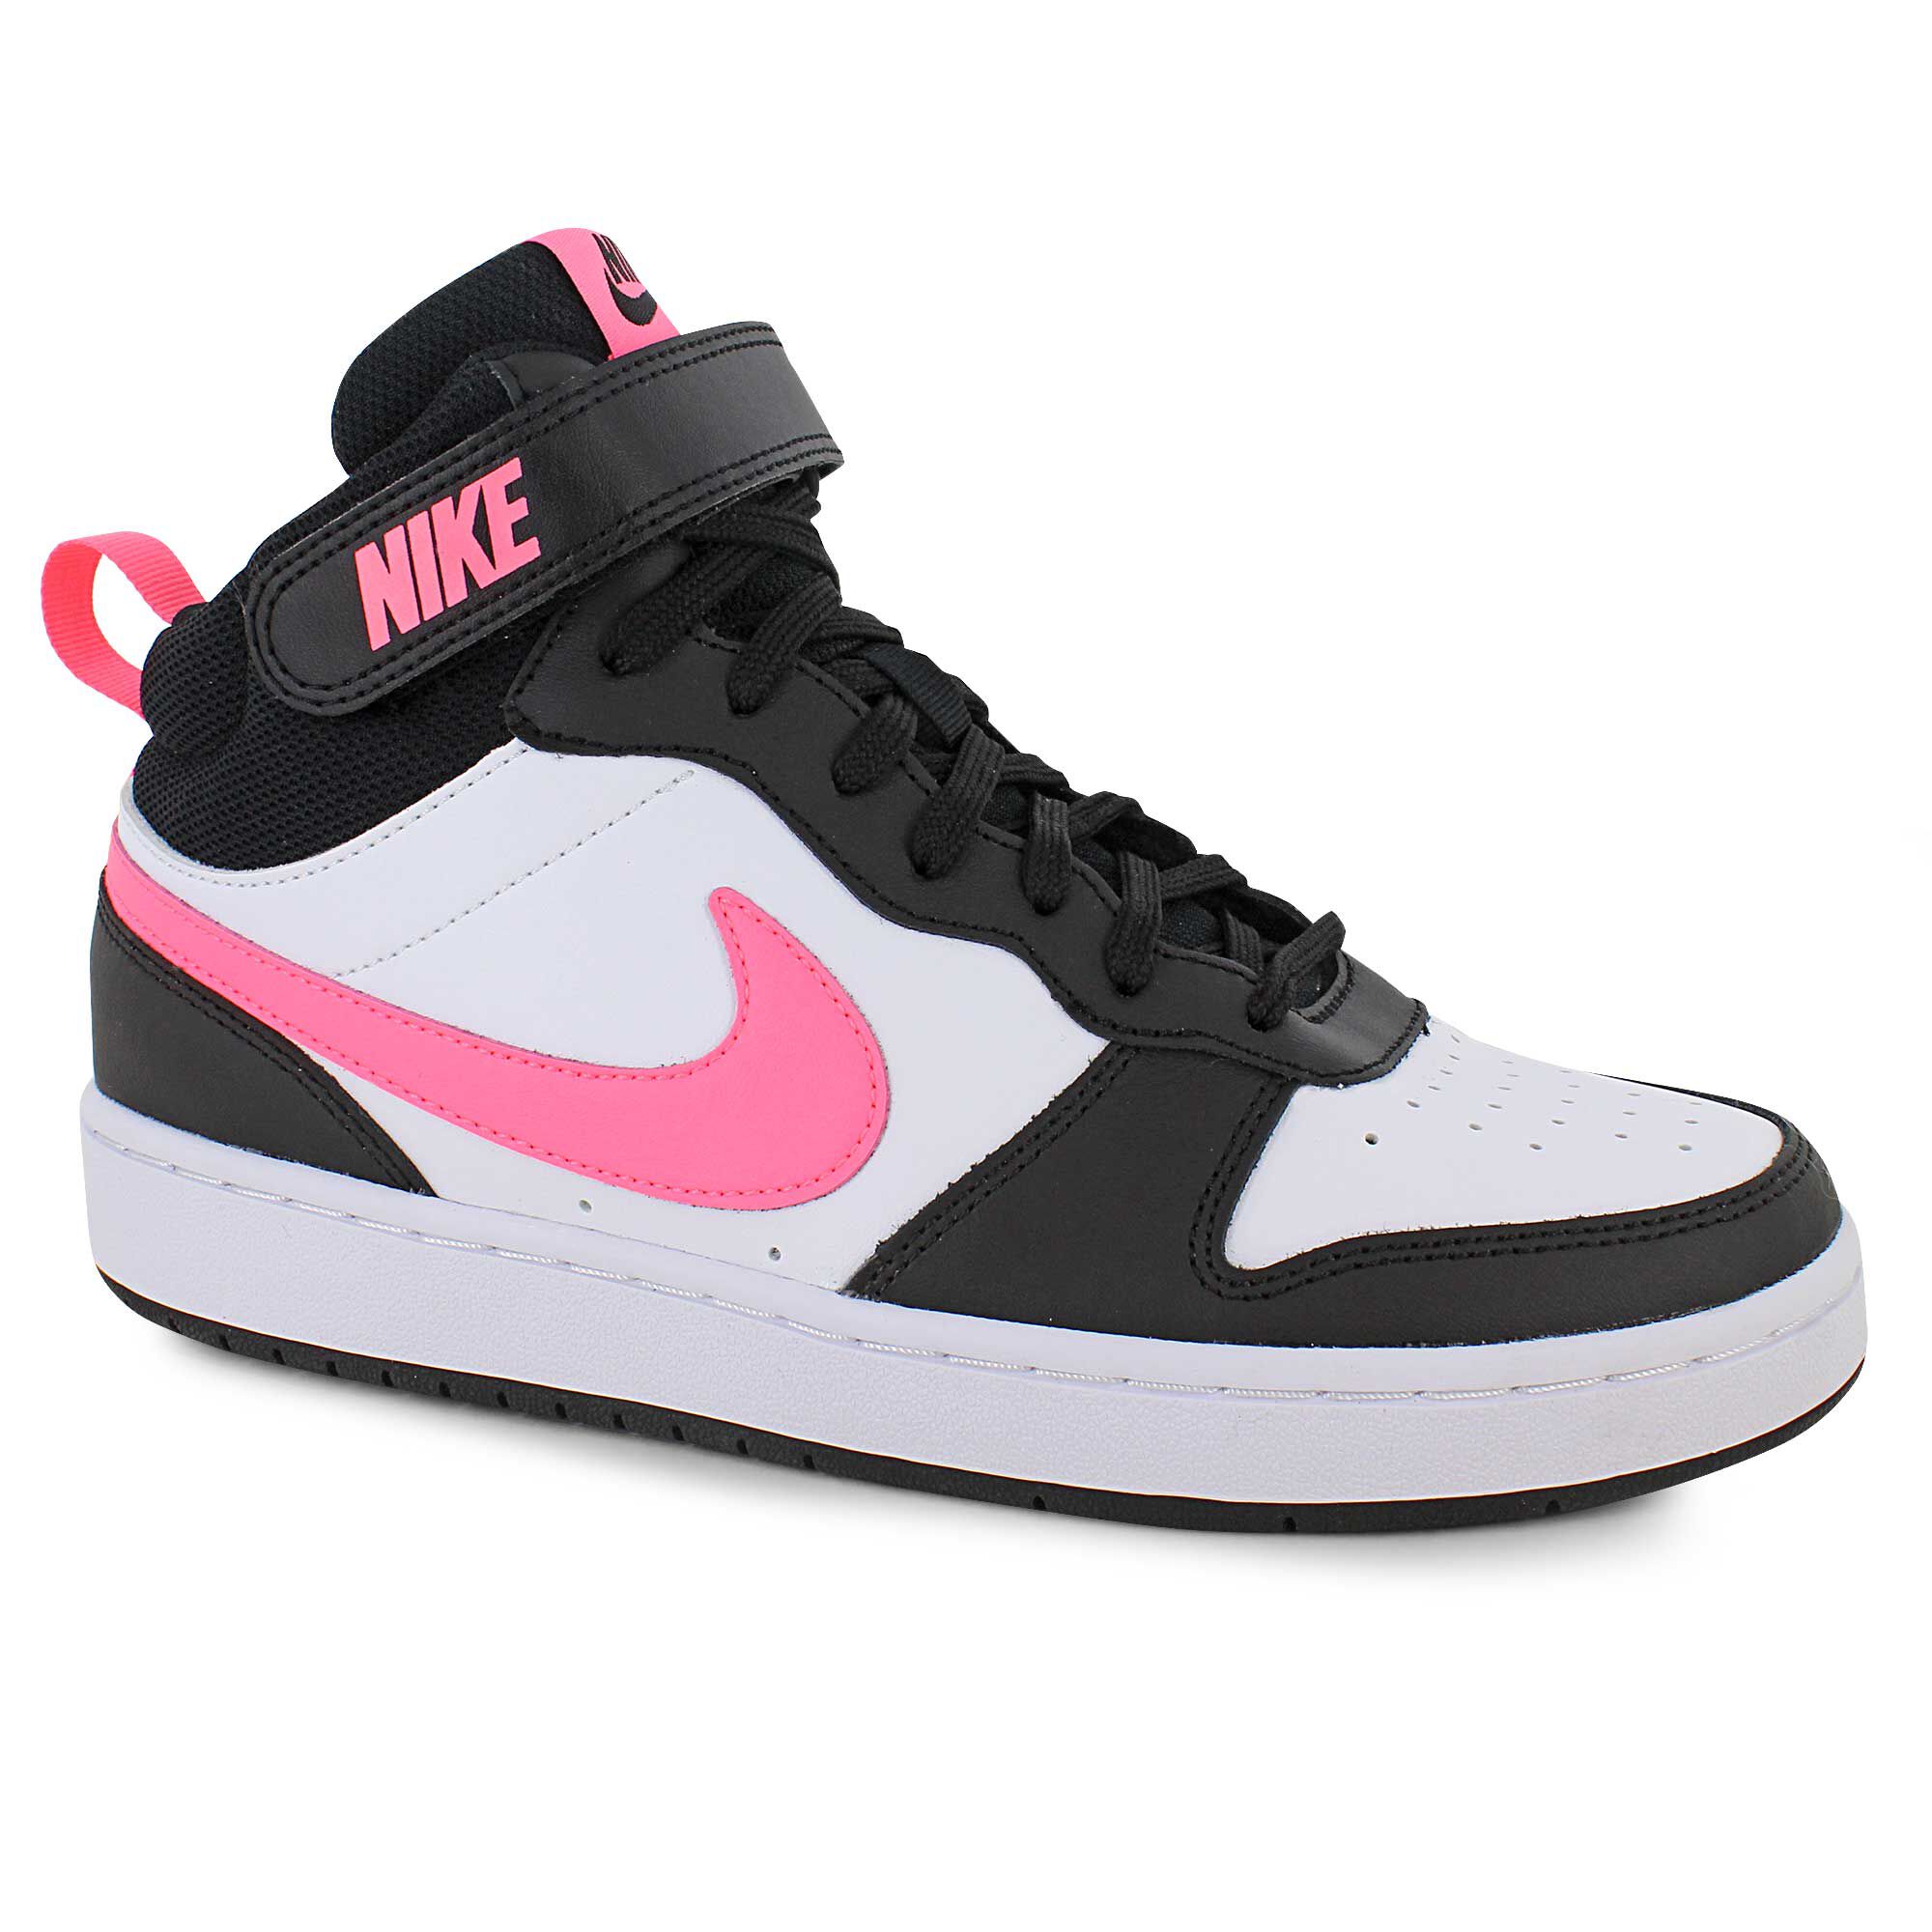 Nike | Shop Now at SHOE DEPT. ENCORE